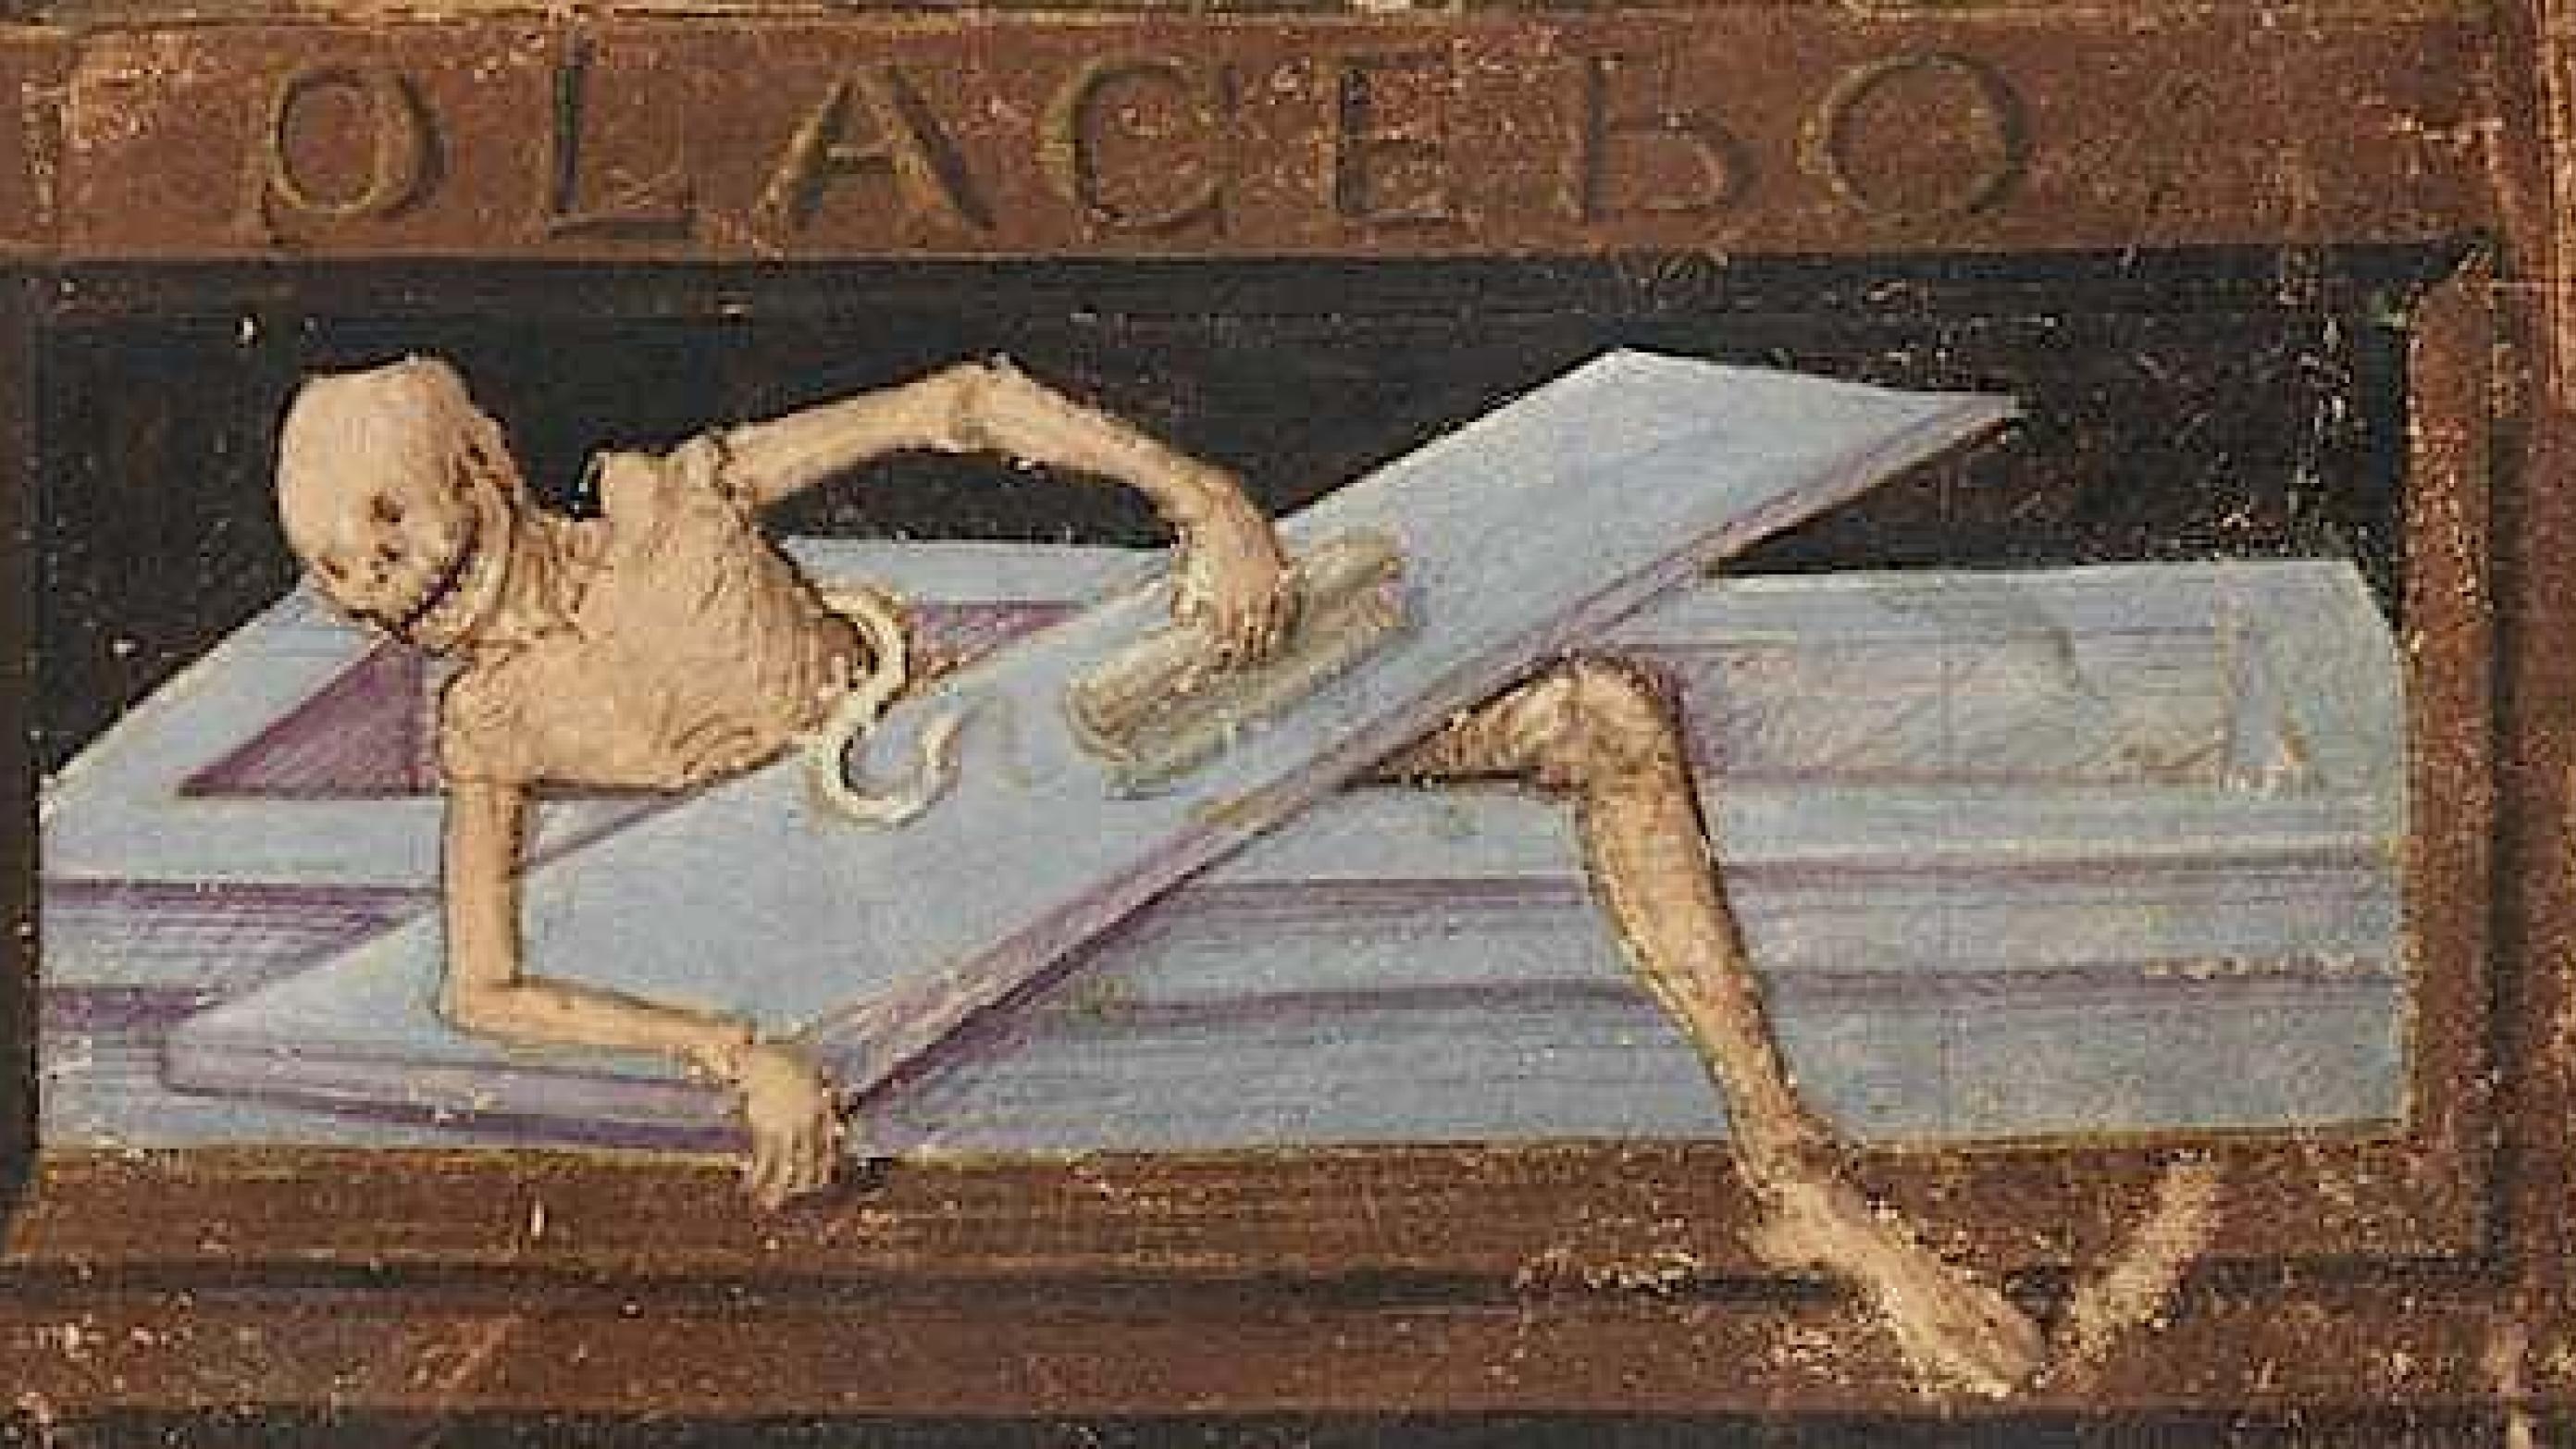 Illustration (udsnit) fra såkaldt ”tidebog”. Omkr. 1490. Benediktoinerkollegium, Sarnen (Cod. membr. 35, f. 56r – Book of hours (http://www.e-codices.unifr.ch/en/list/one/bks/membr0035)